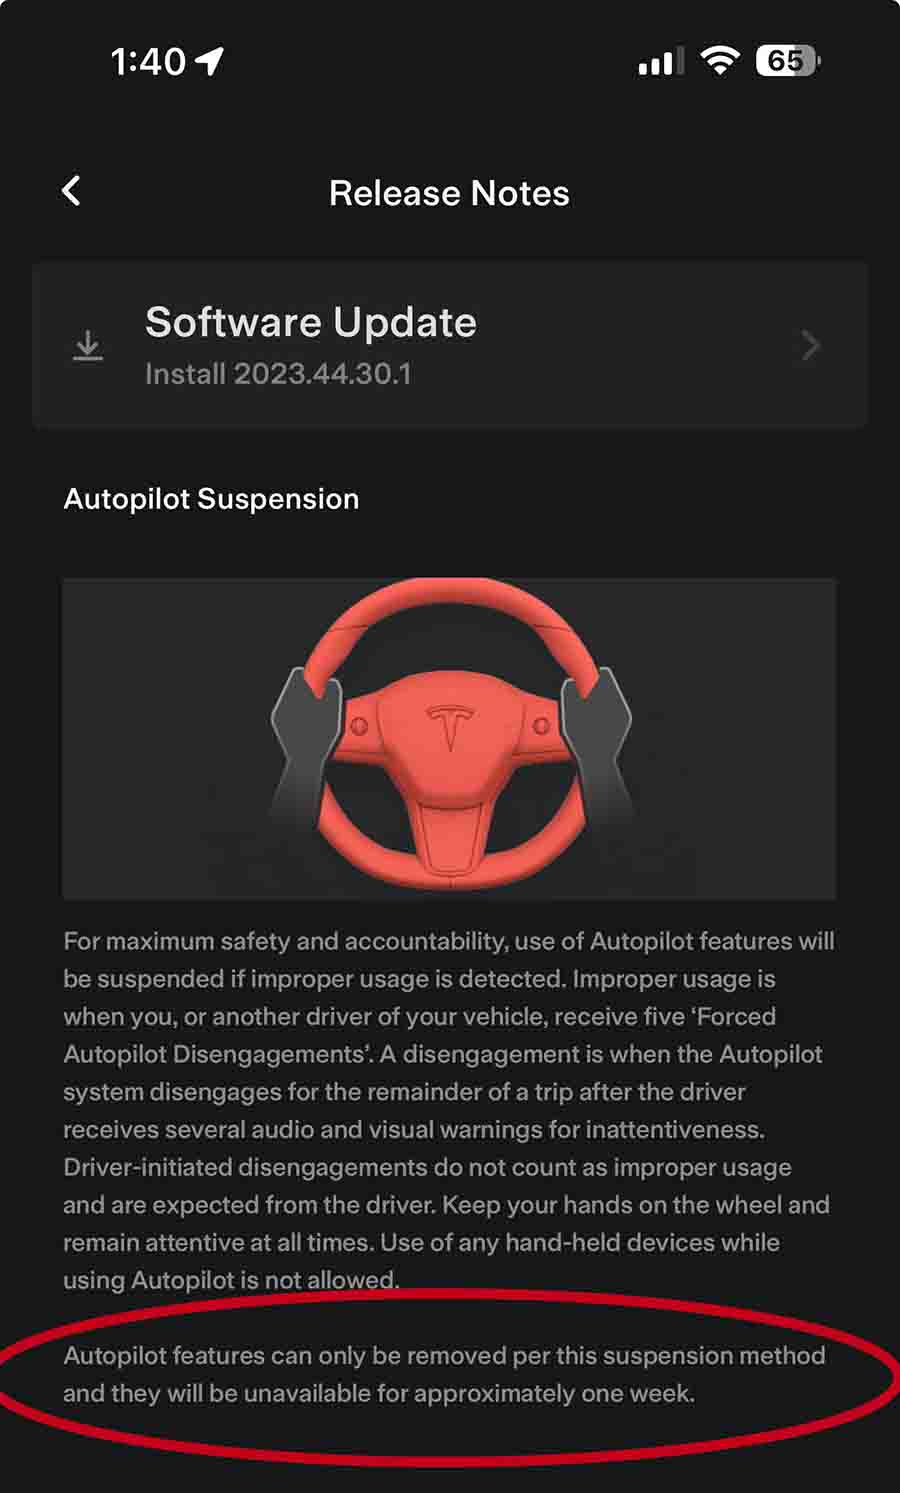 Tesla suspends autopilot feature